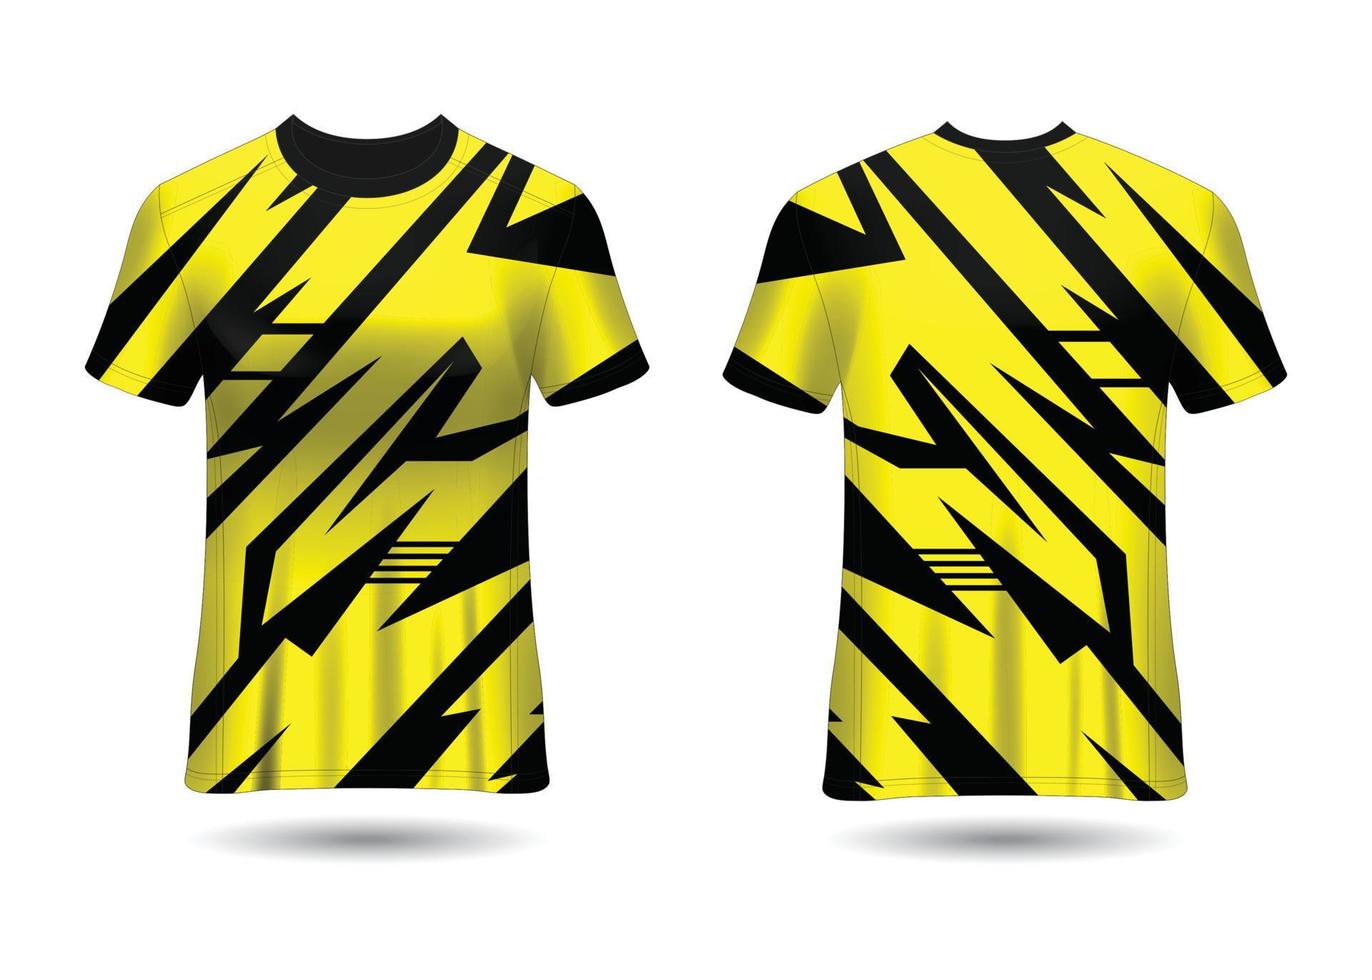 sport race jersey ontwerpsjabloon voor teamuniformen vector